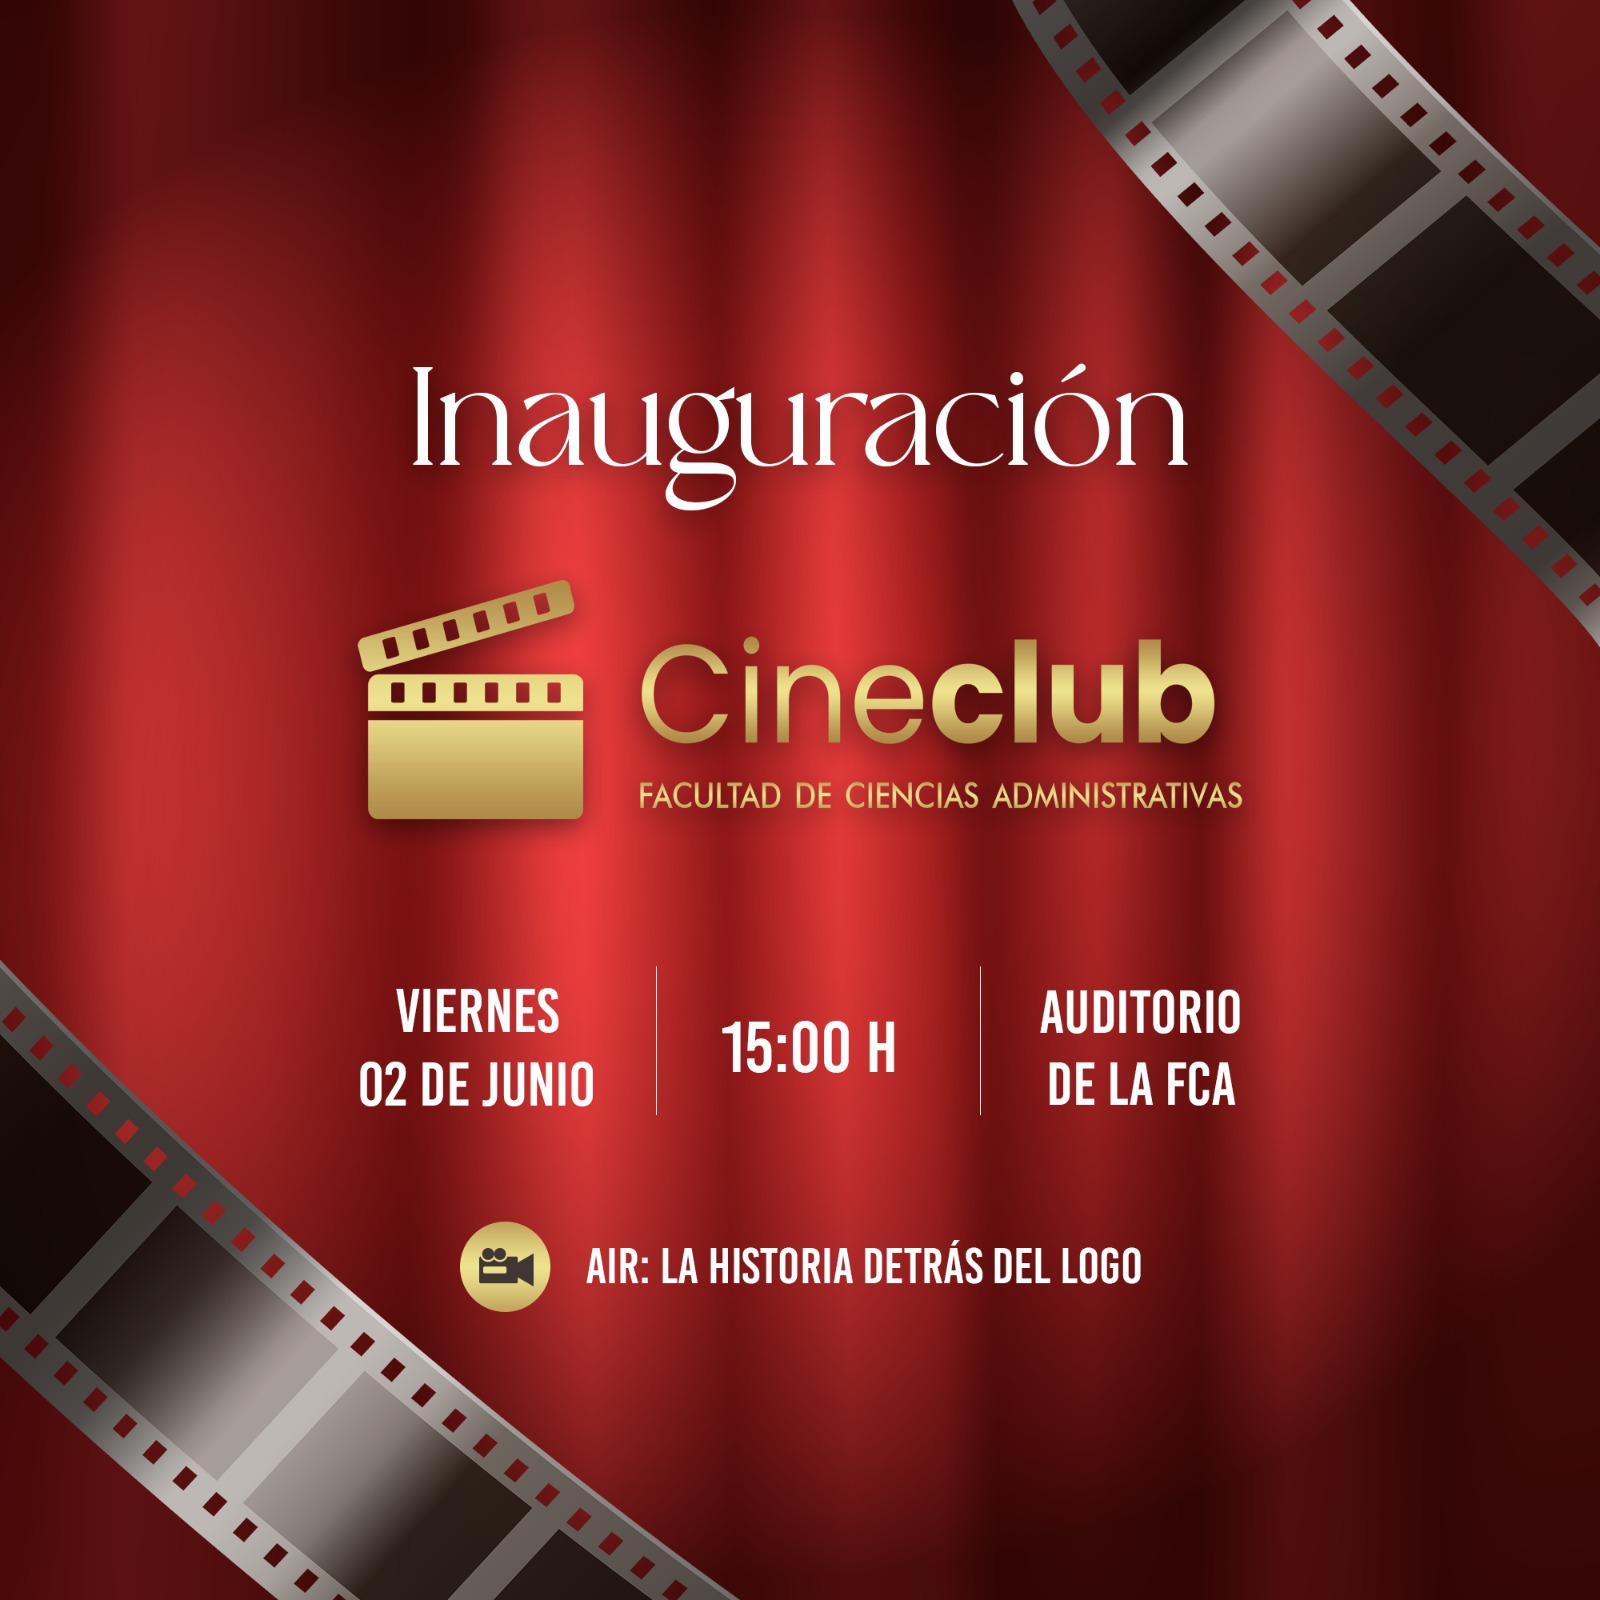 Ciencias Administrativas inaugura Cineclub con la película ‘Air: la historia detrás del logo’